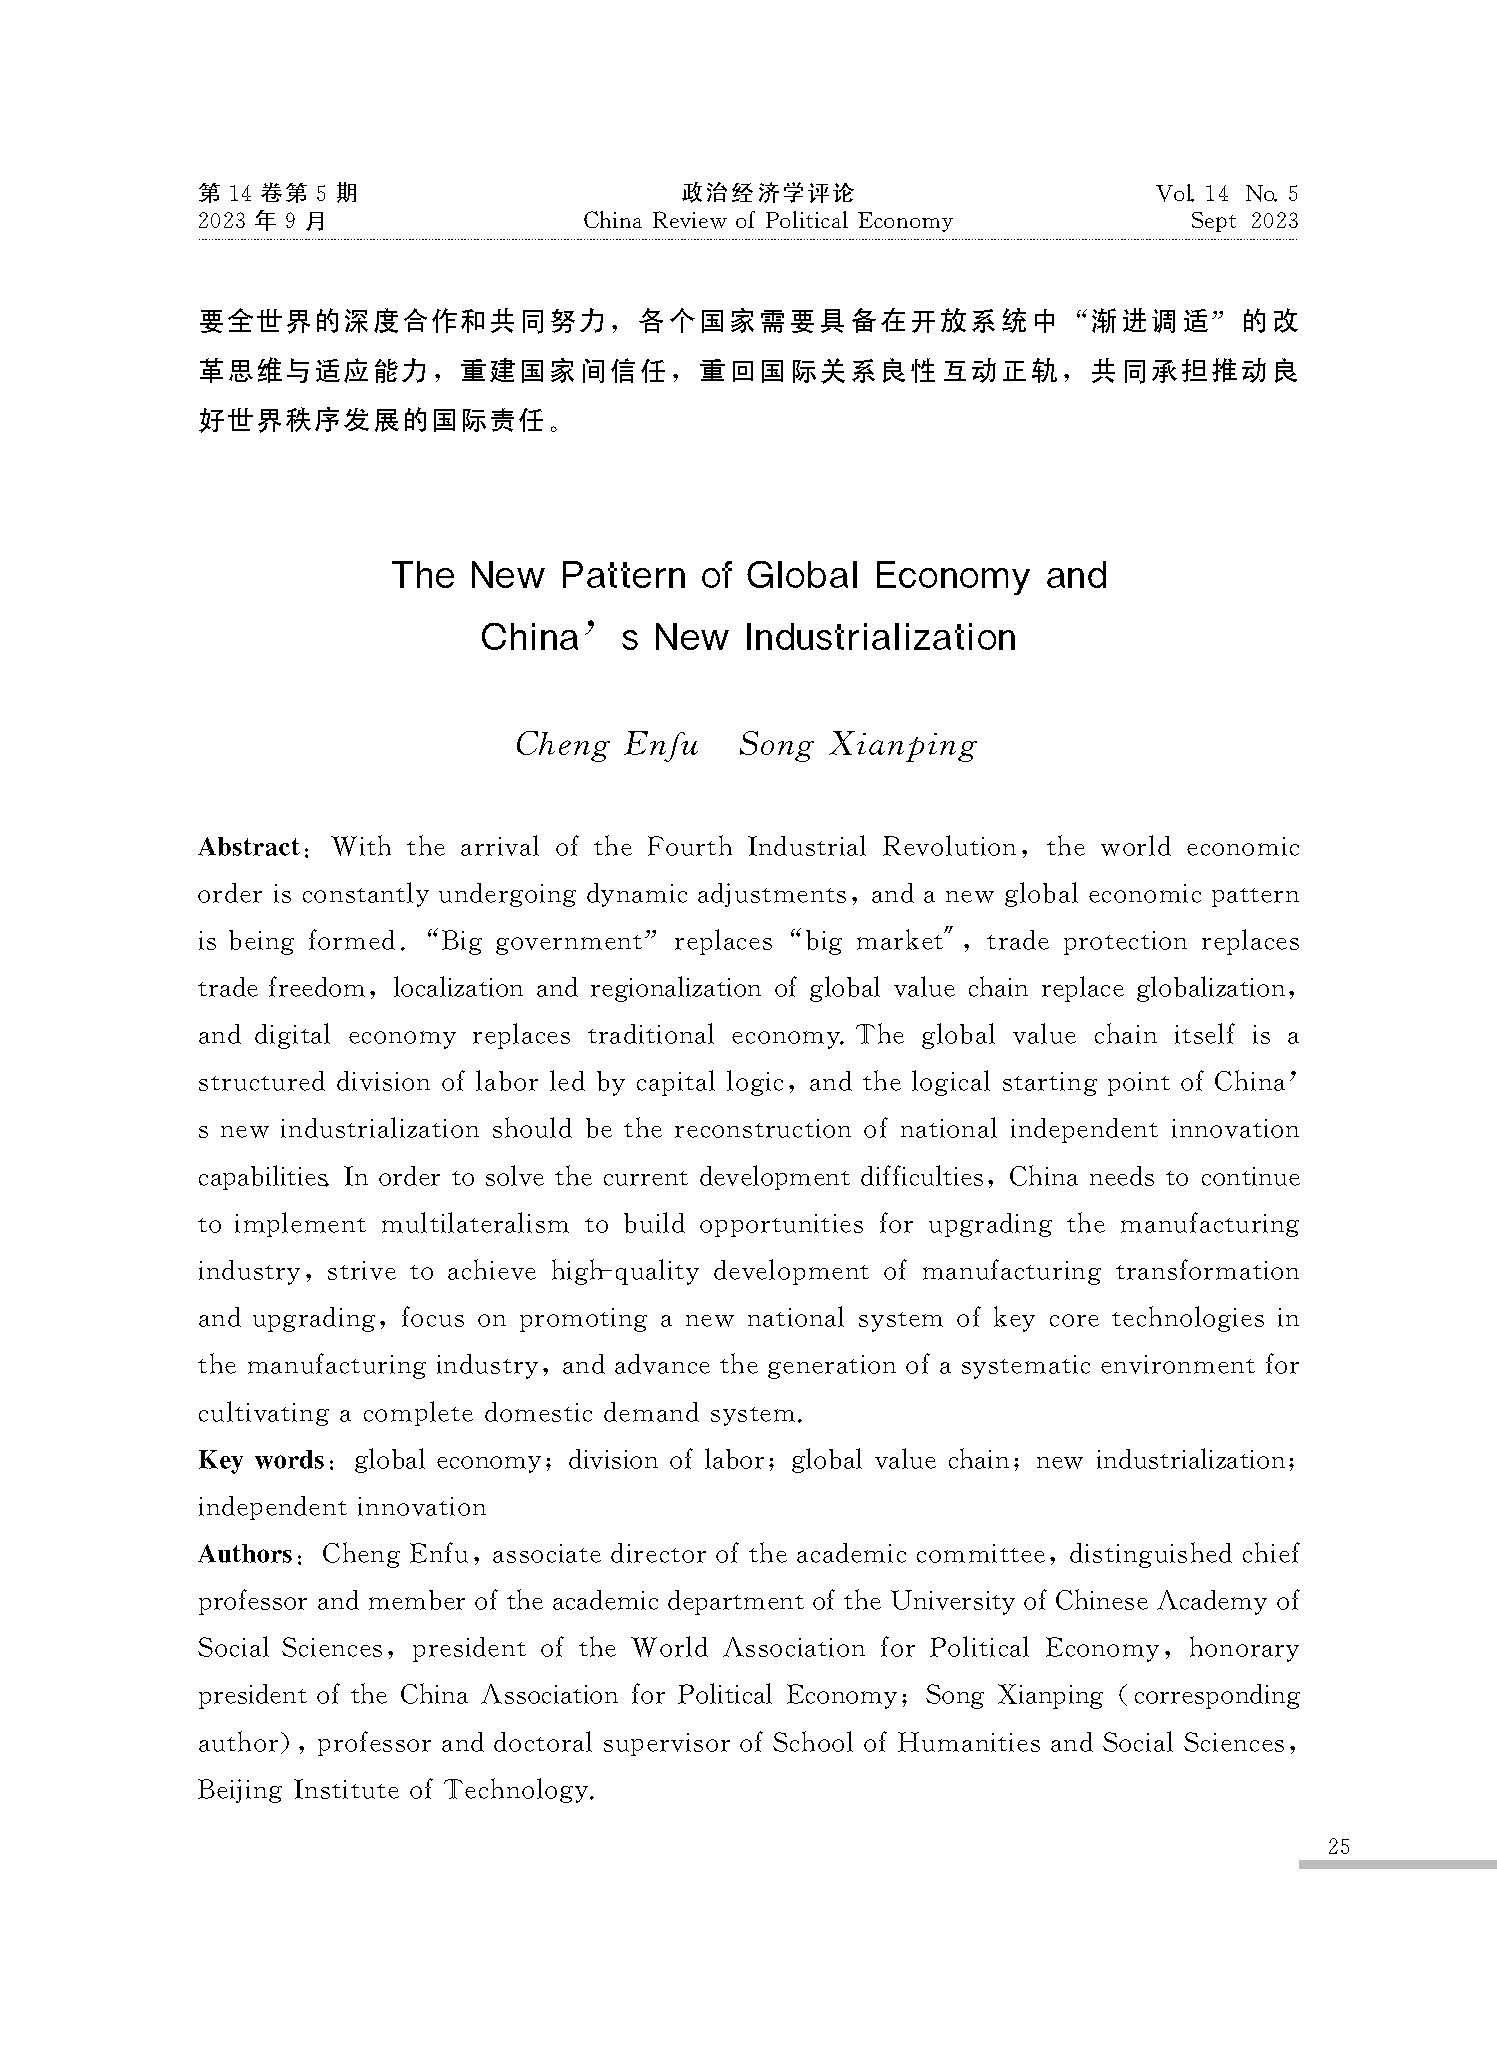 全球经济新格局与中国新型工业化_程恩富_页面_23.jpg